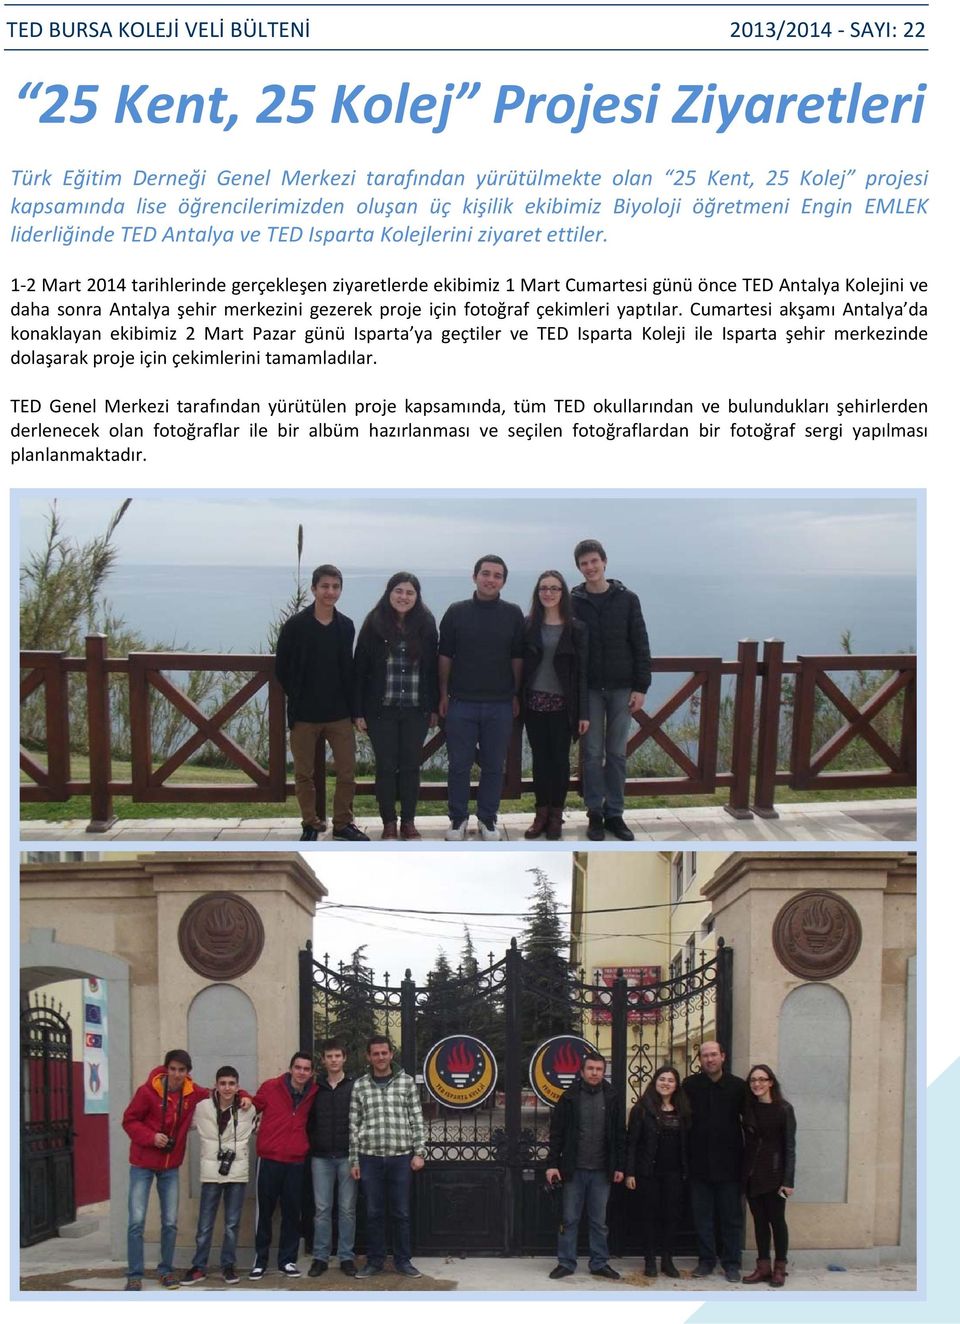 1 2 Mart 2014 tarihlerinde gerçekleşen ziyaretlerde ekibimiz 1 Mart Cumartesi günü önce TED Antalya Kolejini ve daha sonra Antalya şehir merkezini gezerek proje için fotoğraf çekimleri yaptılar.